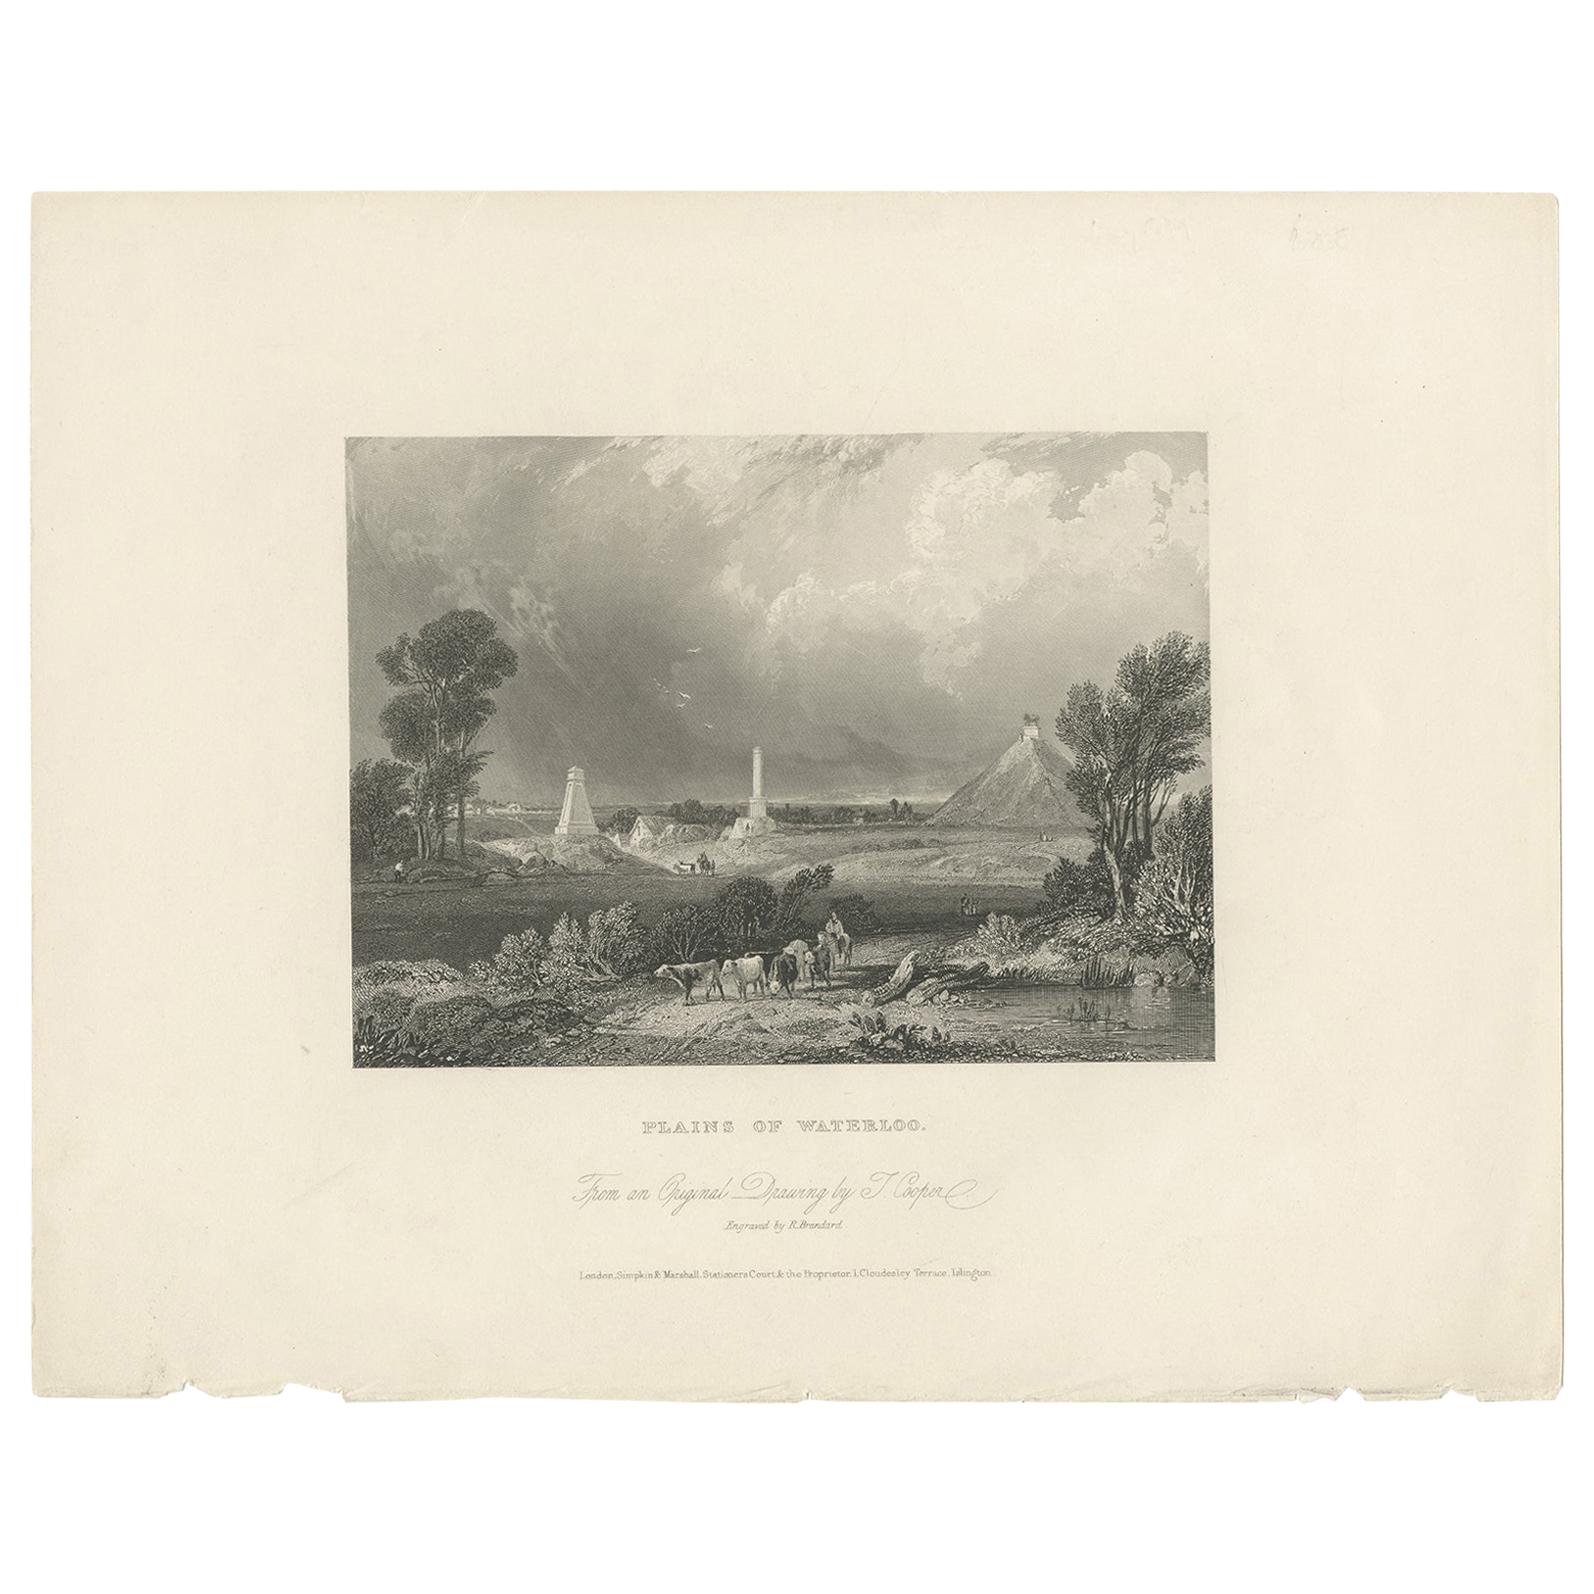 Impression ancienne des monuments sur le site de la bataille de Waterloo, vers 1840